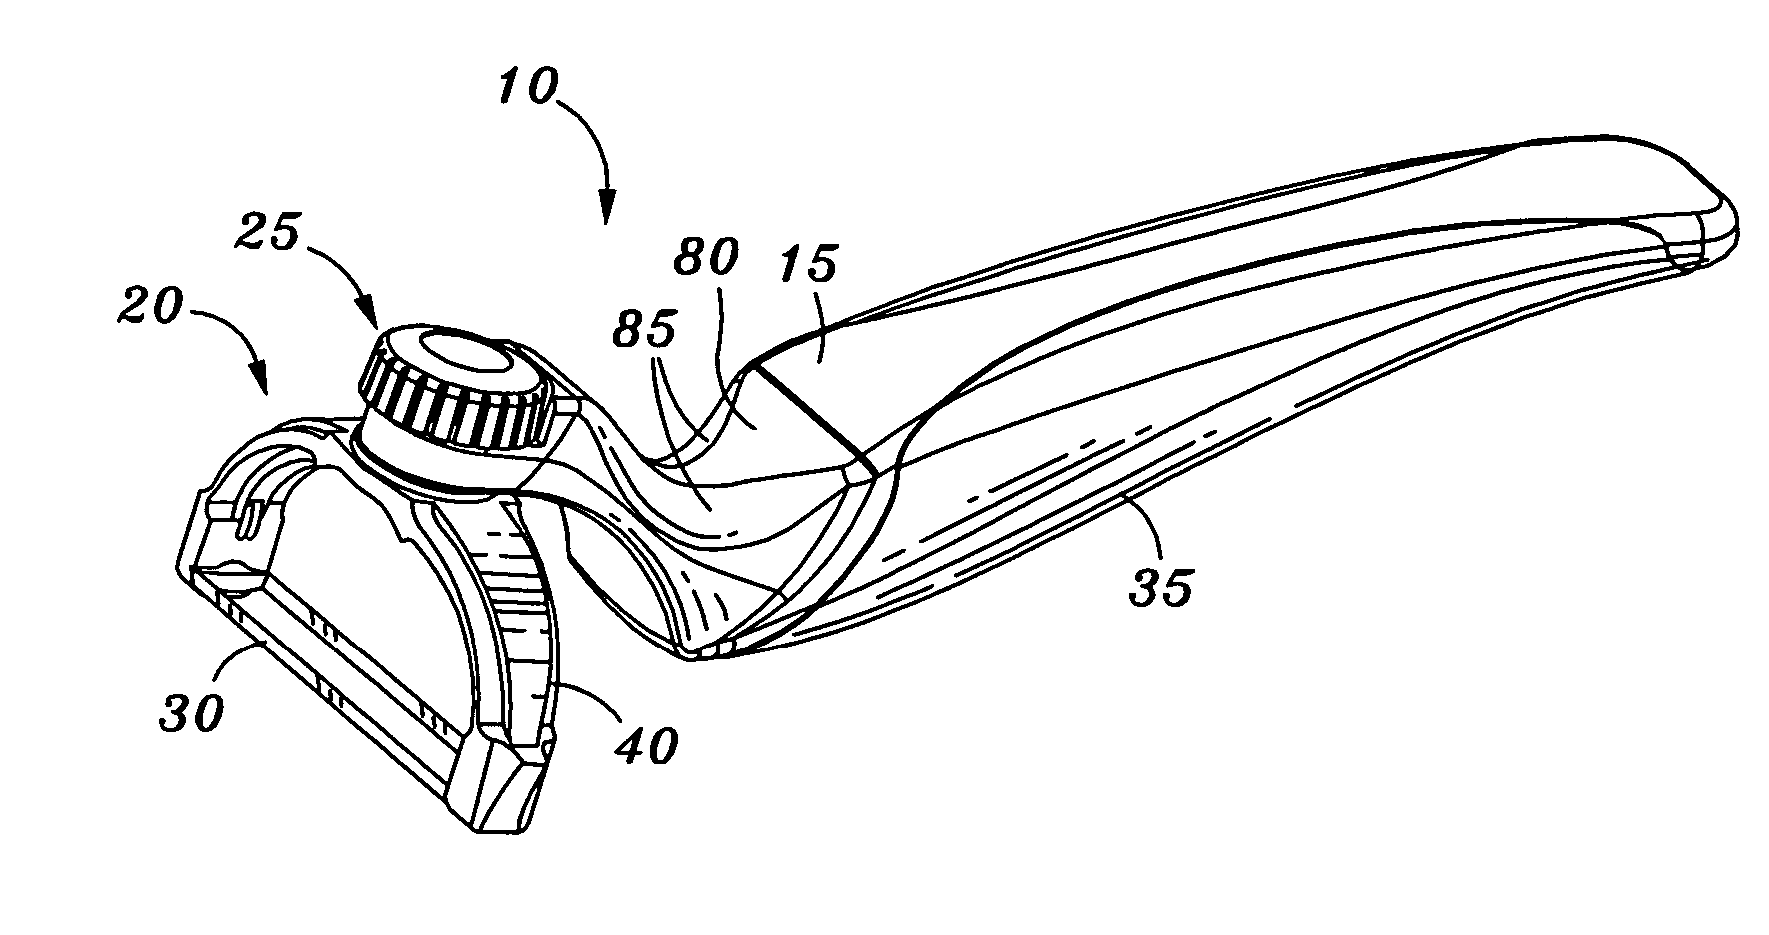 Multi-position peeler apparatus